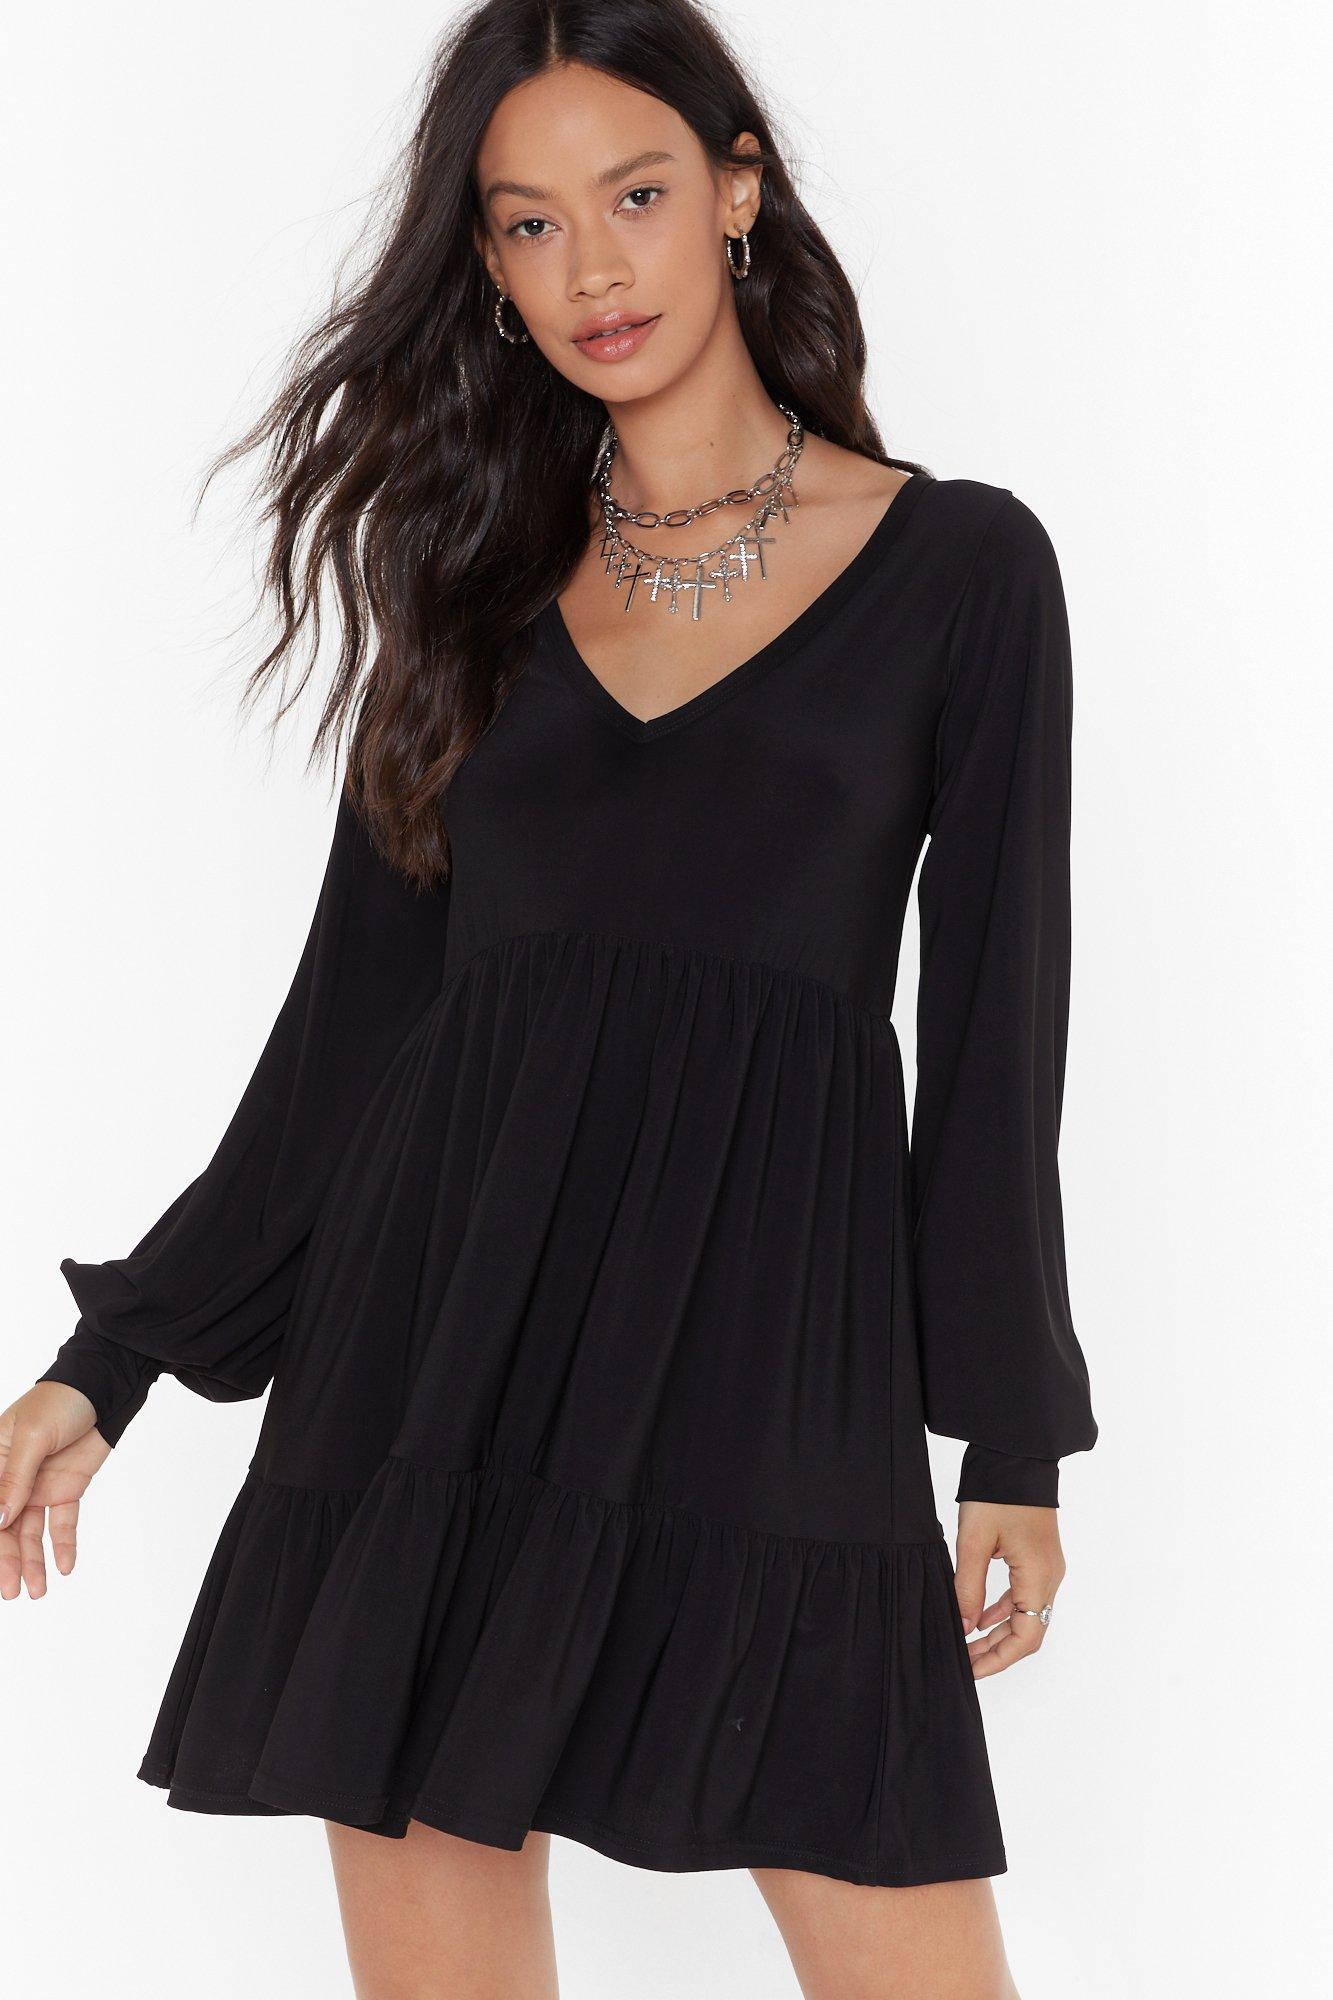 black pleated smock dress